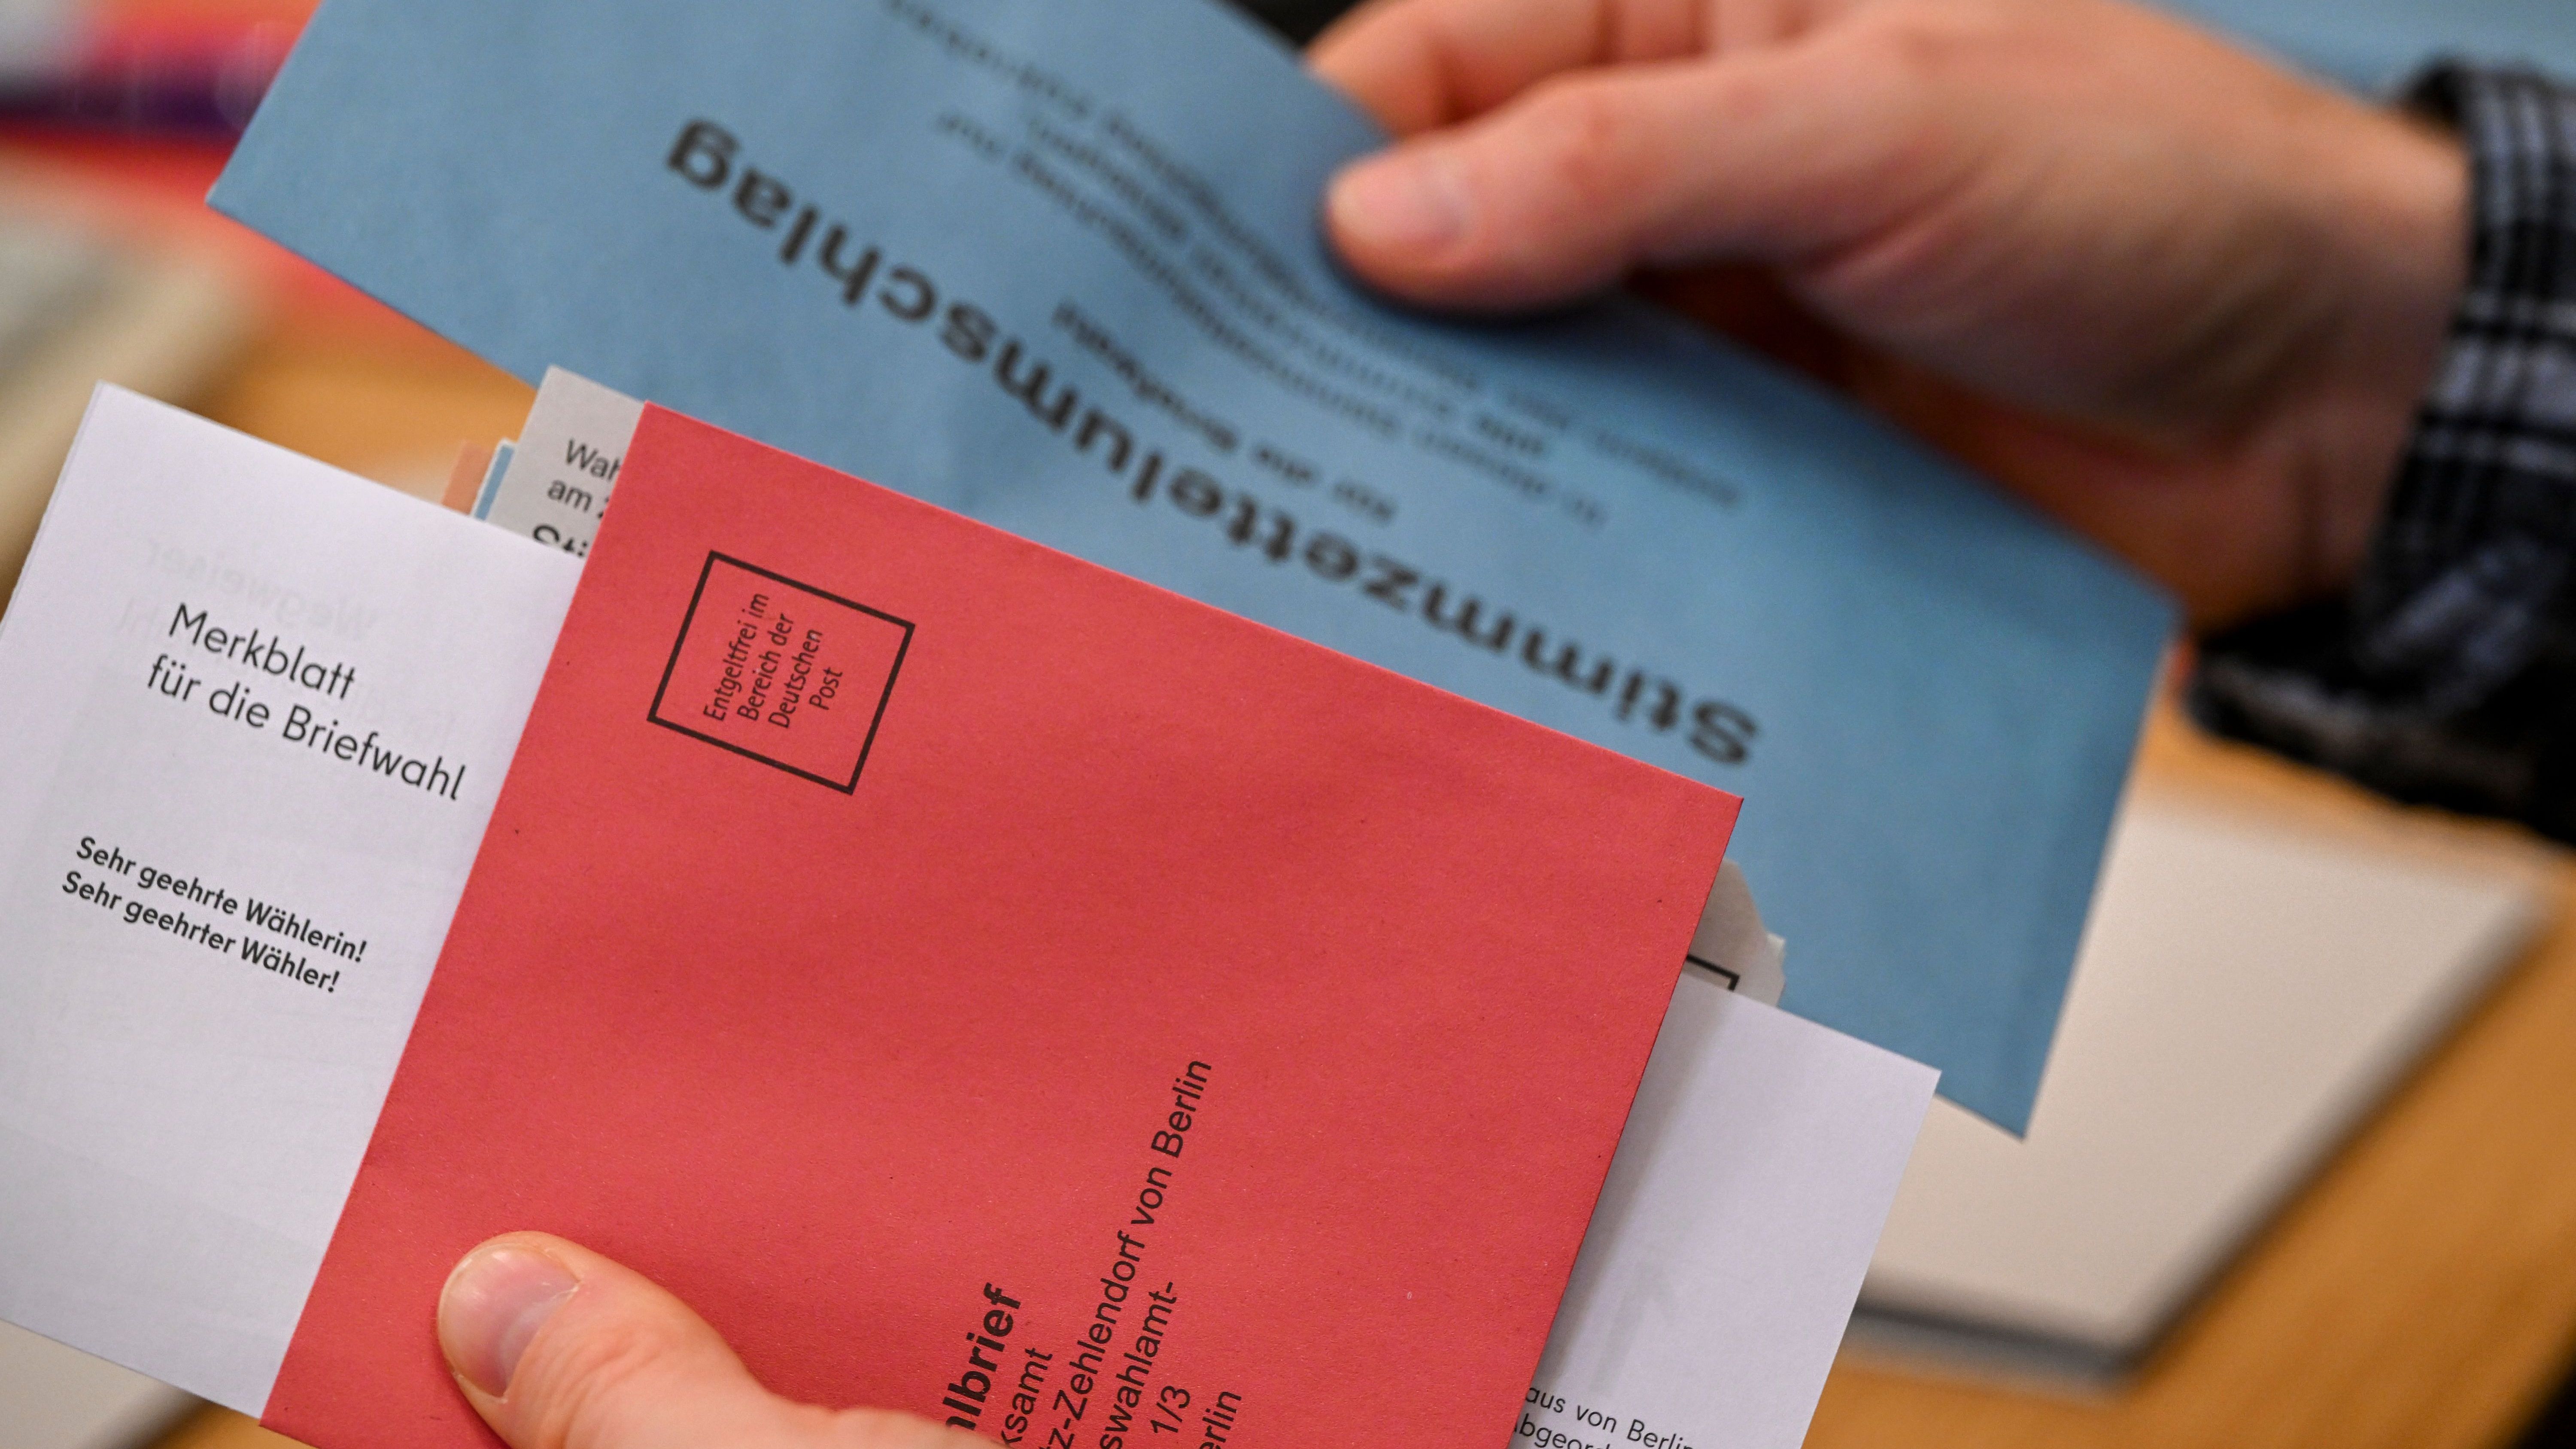 Das Bundesverfassungsgericht hat seine dringend erwartete Eilentscheidung zur Berliner Abgeordnetenhaus-Wahl am 12. Februar getroffen.